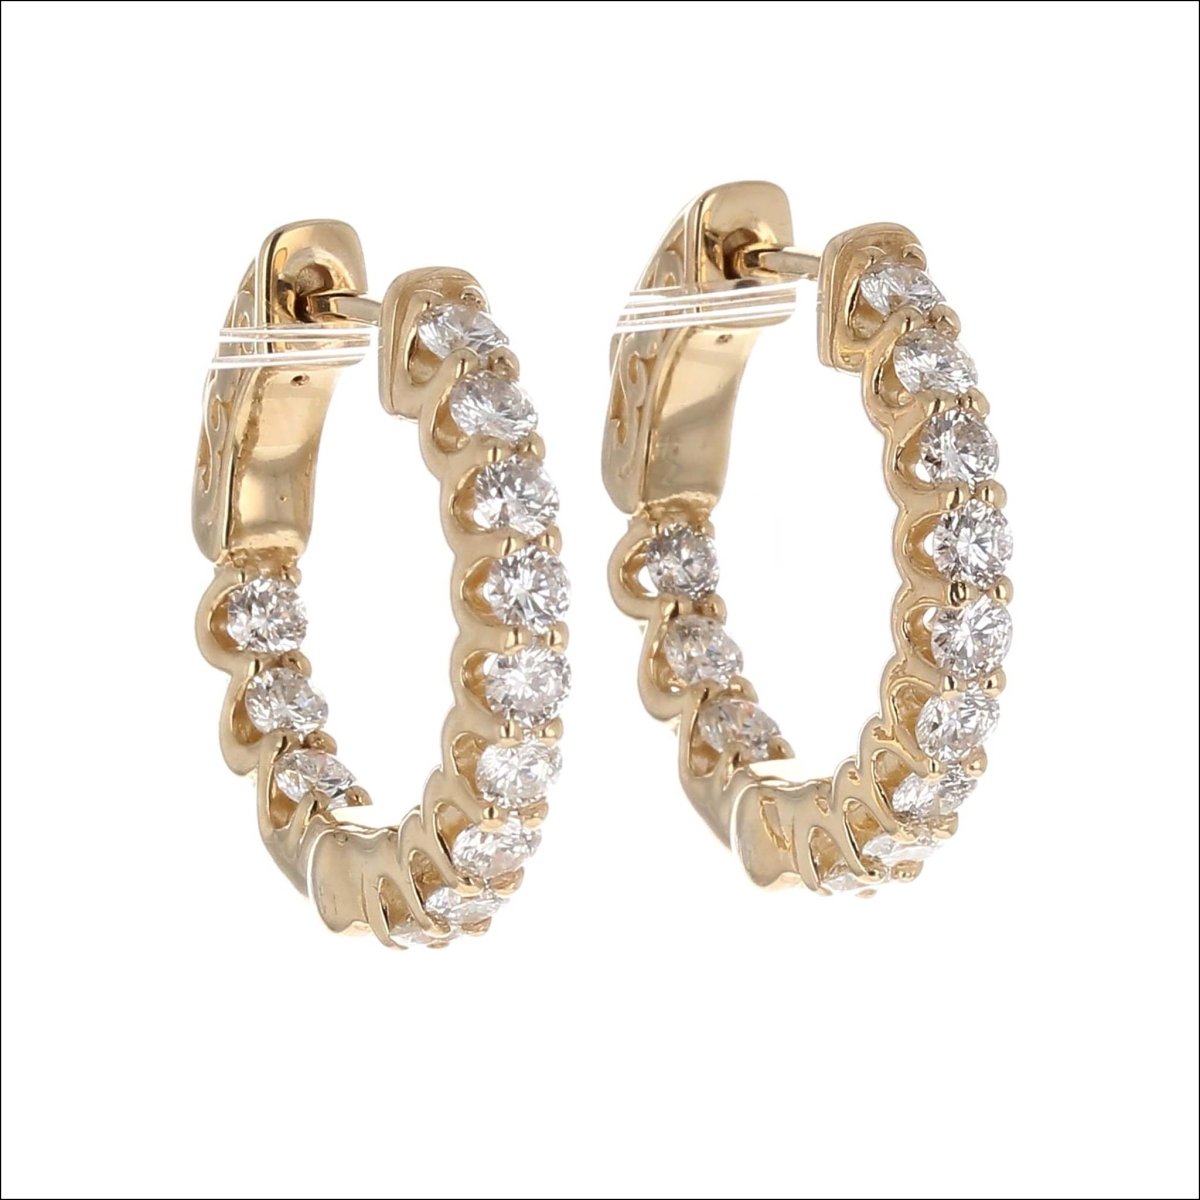 In/Out Diamond Hoop Earrings 14KY 1.18cttw - JewelsmithEarrings